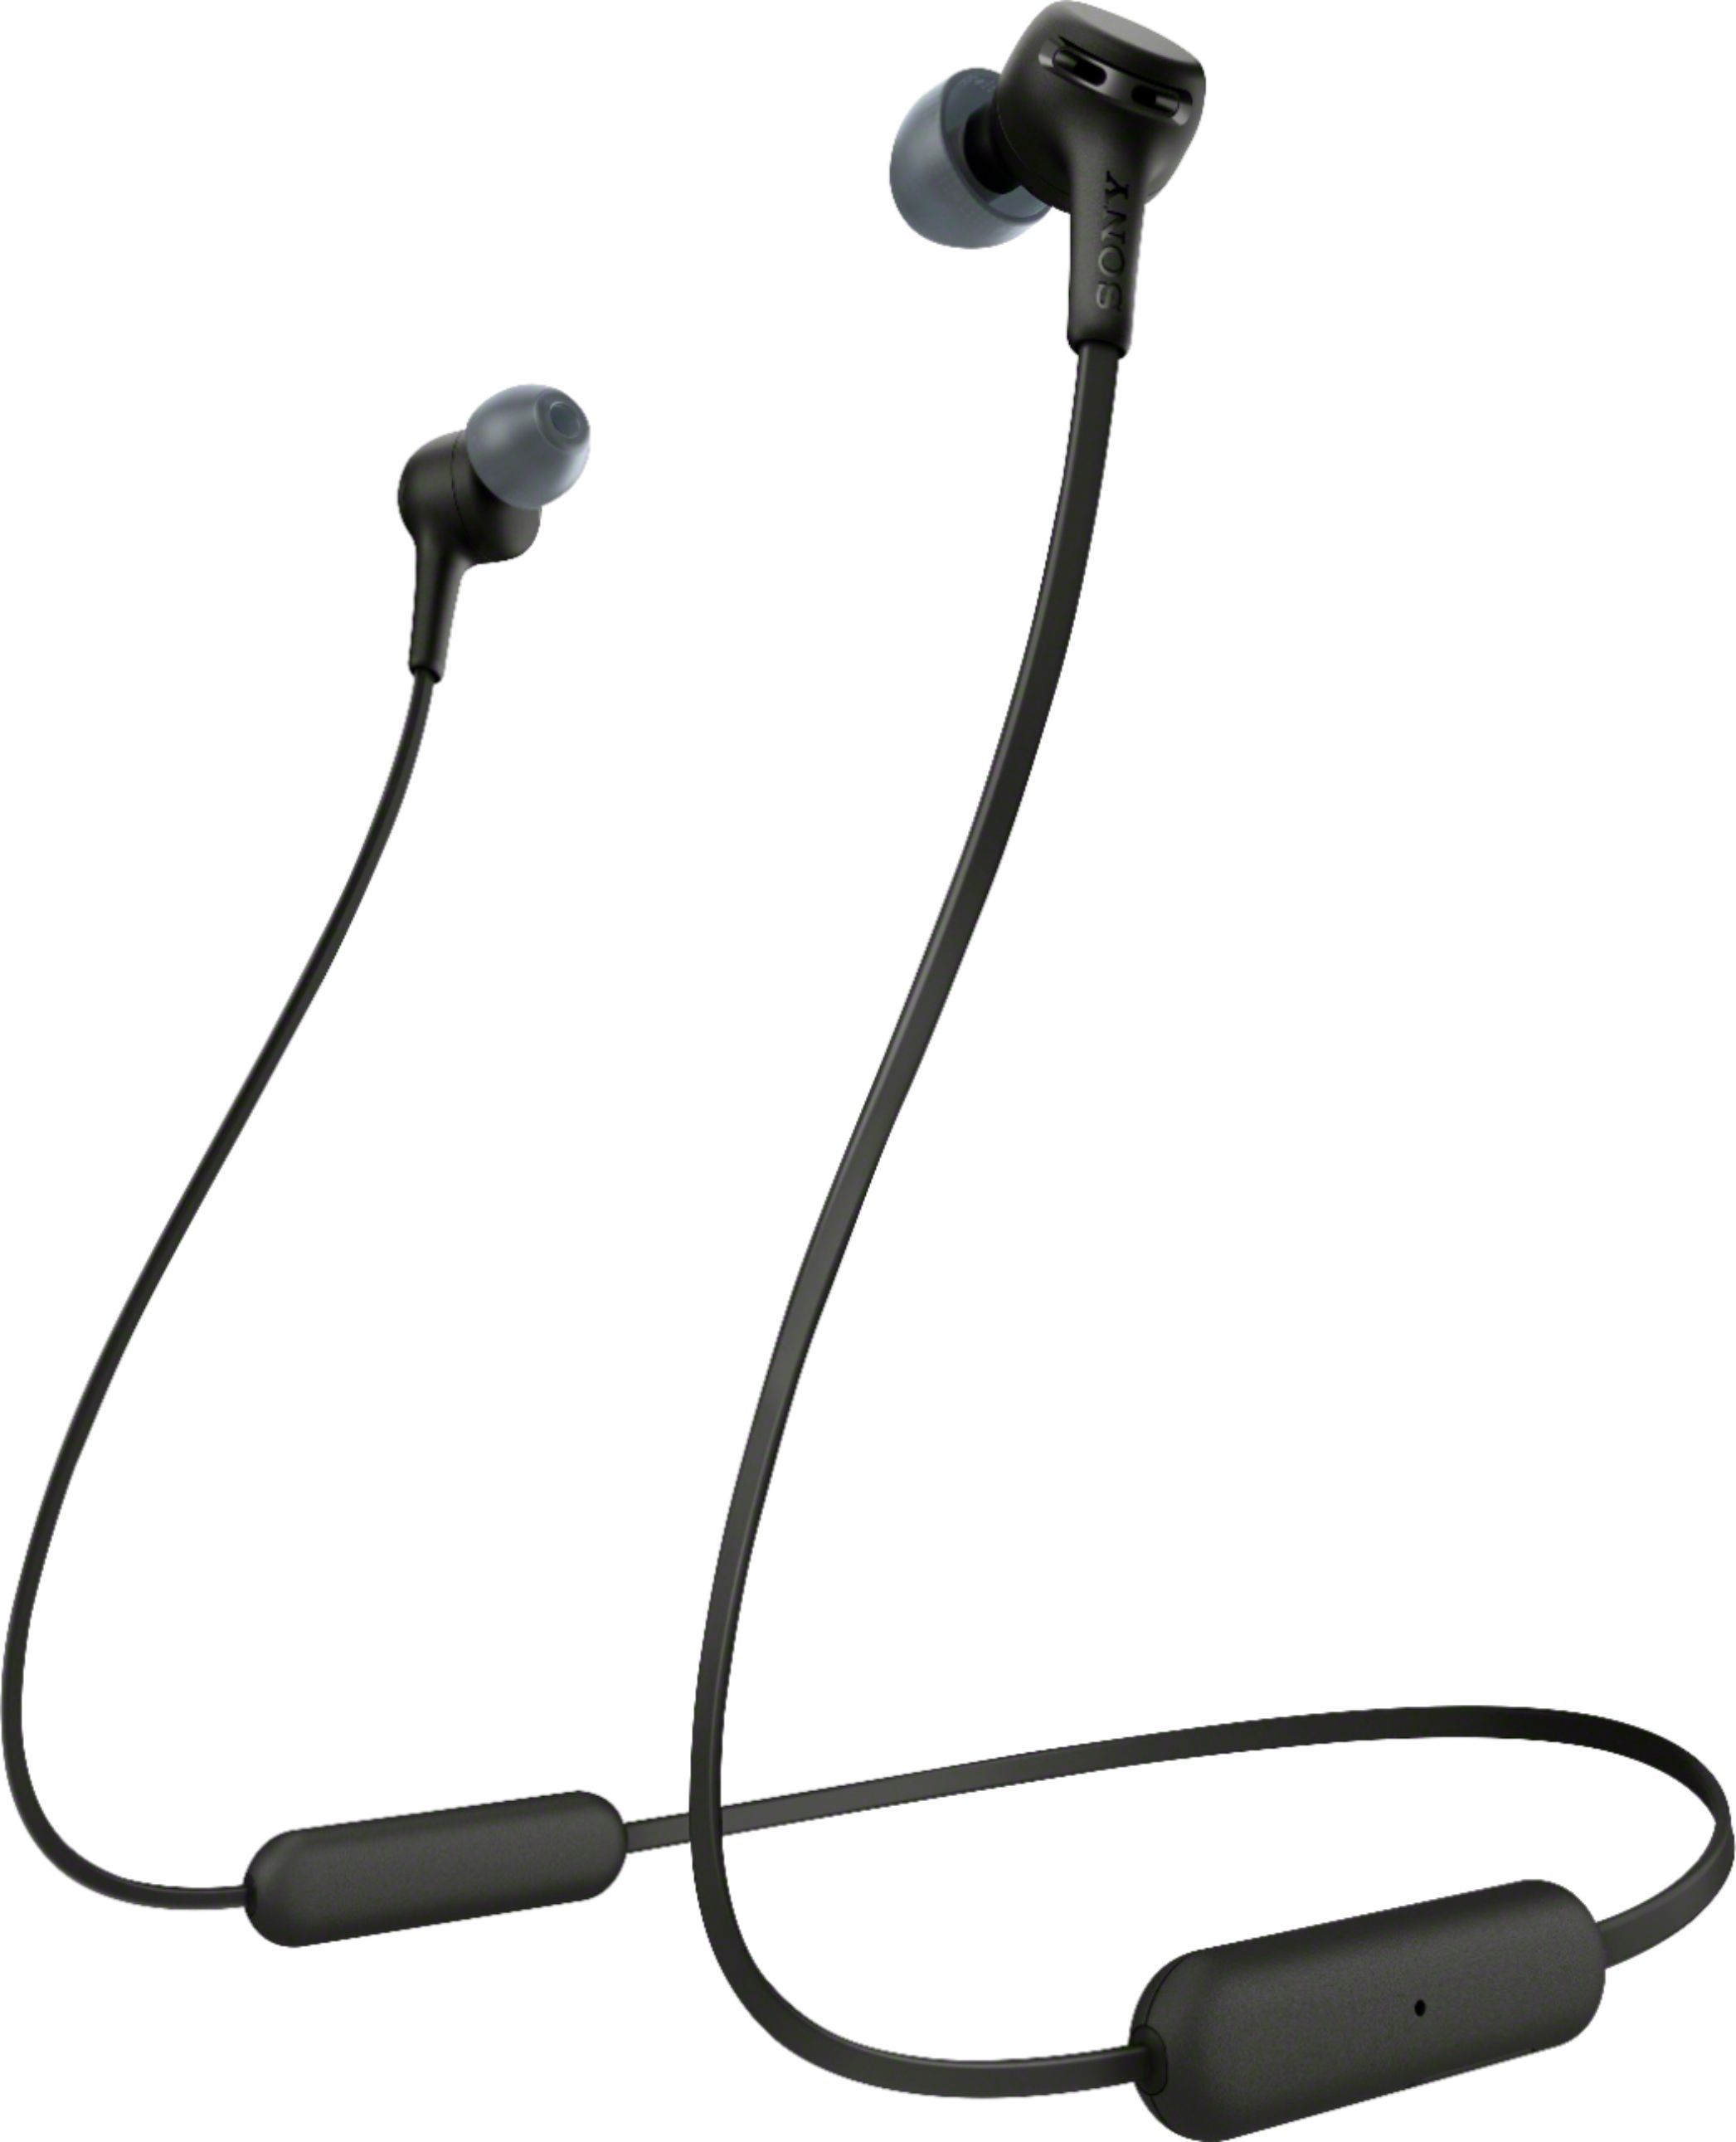 WI-XB400 WIXB400/B Headphones Wireless In-Ear Black Best Sony - Buy